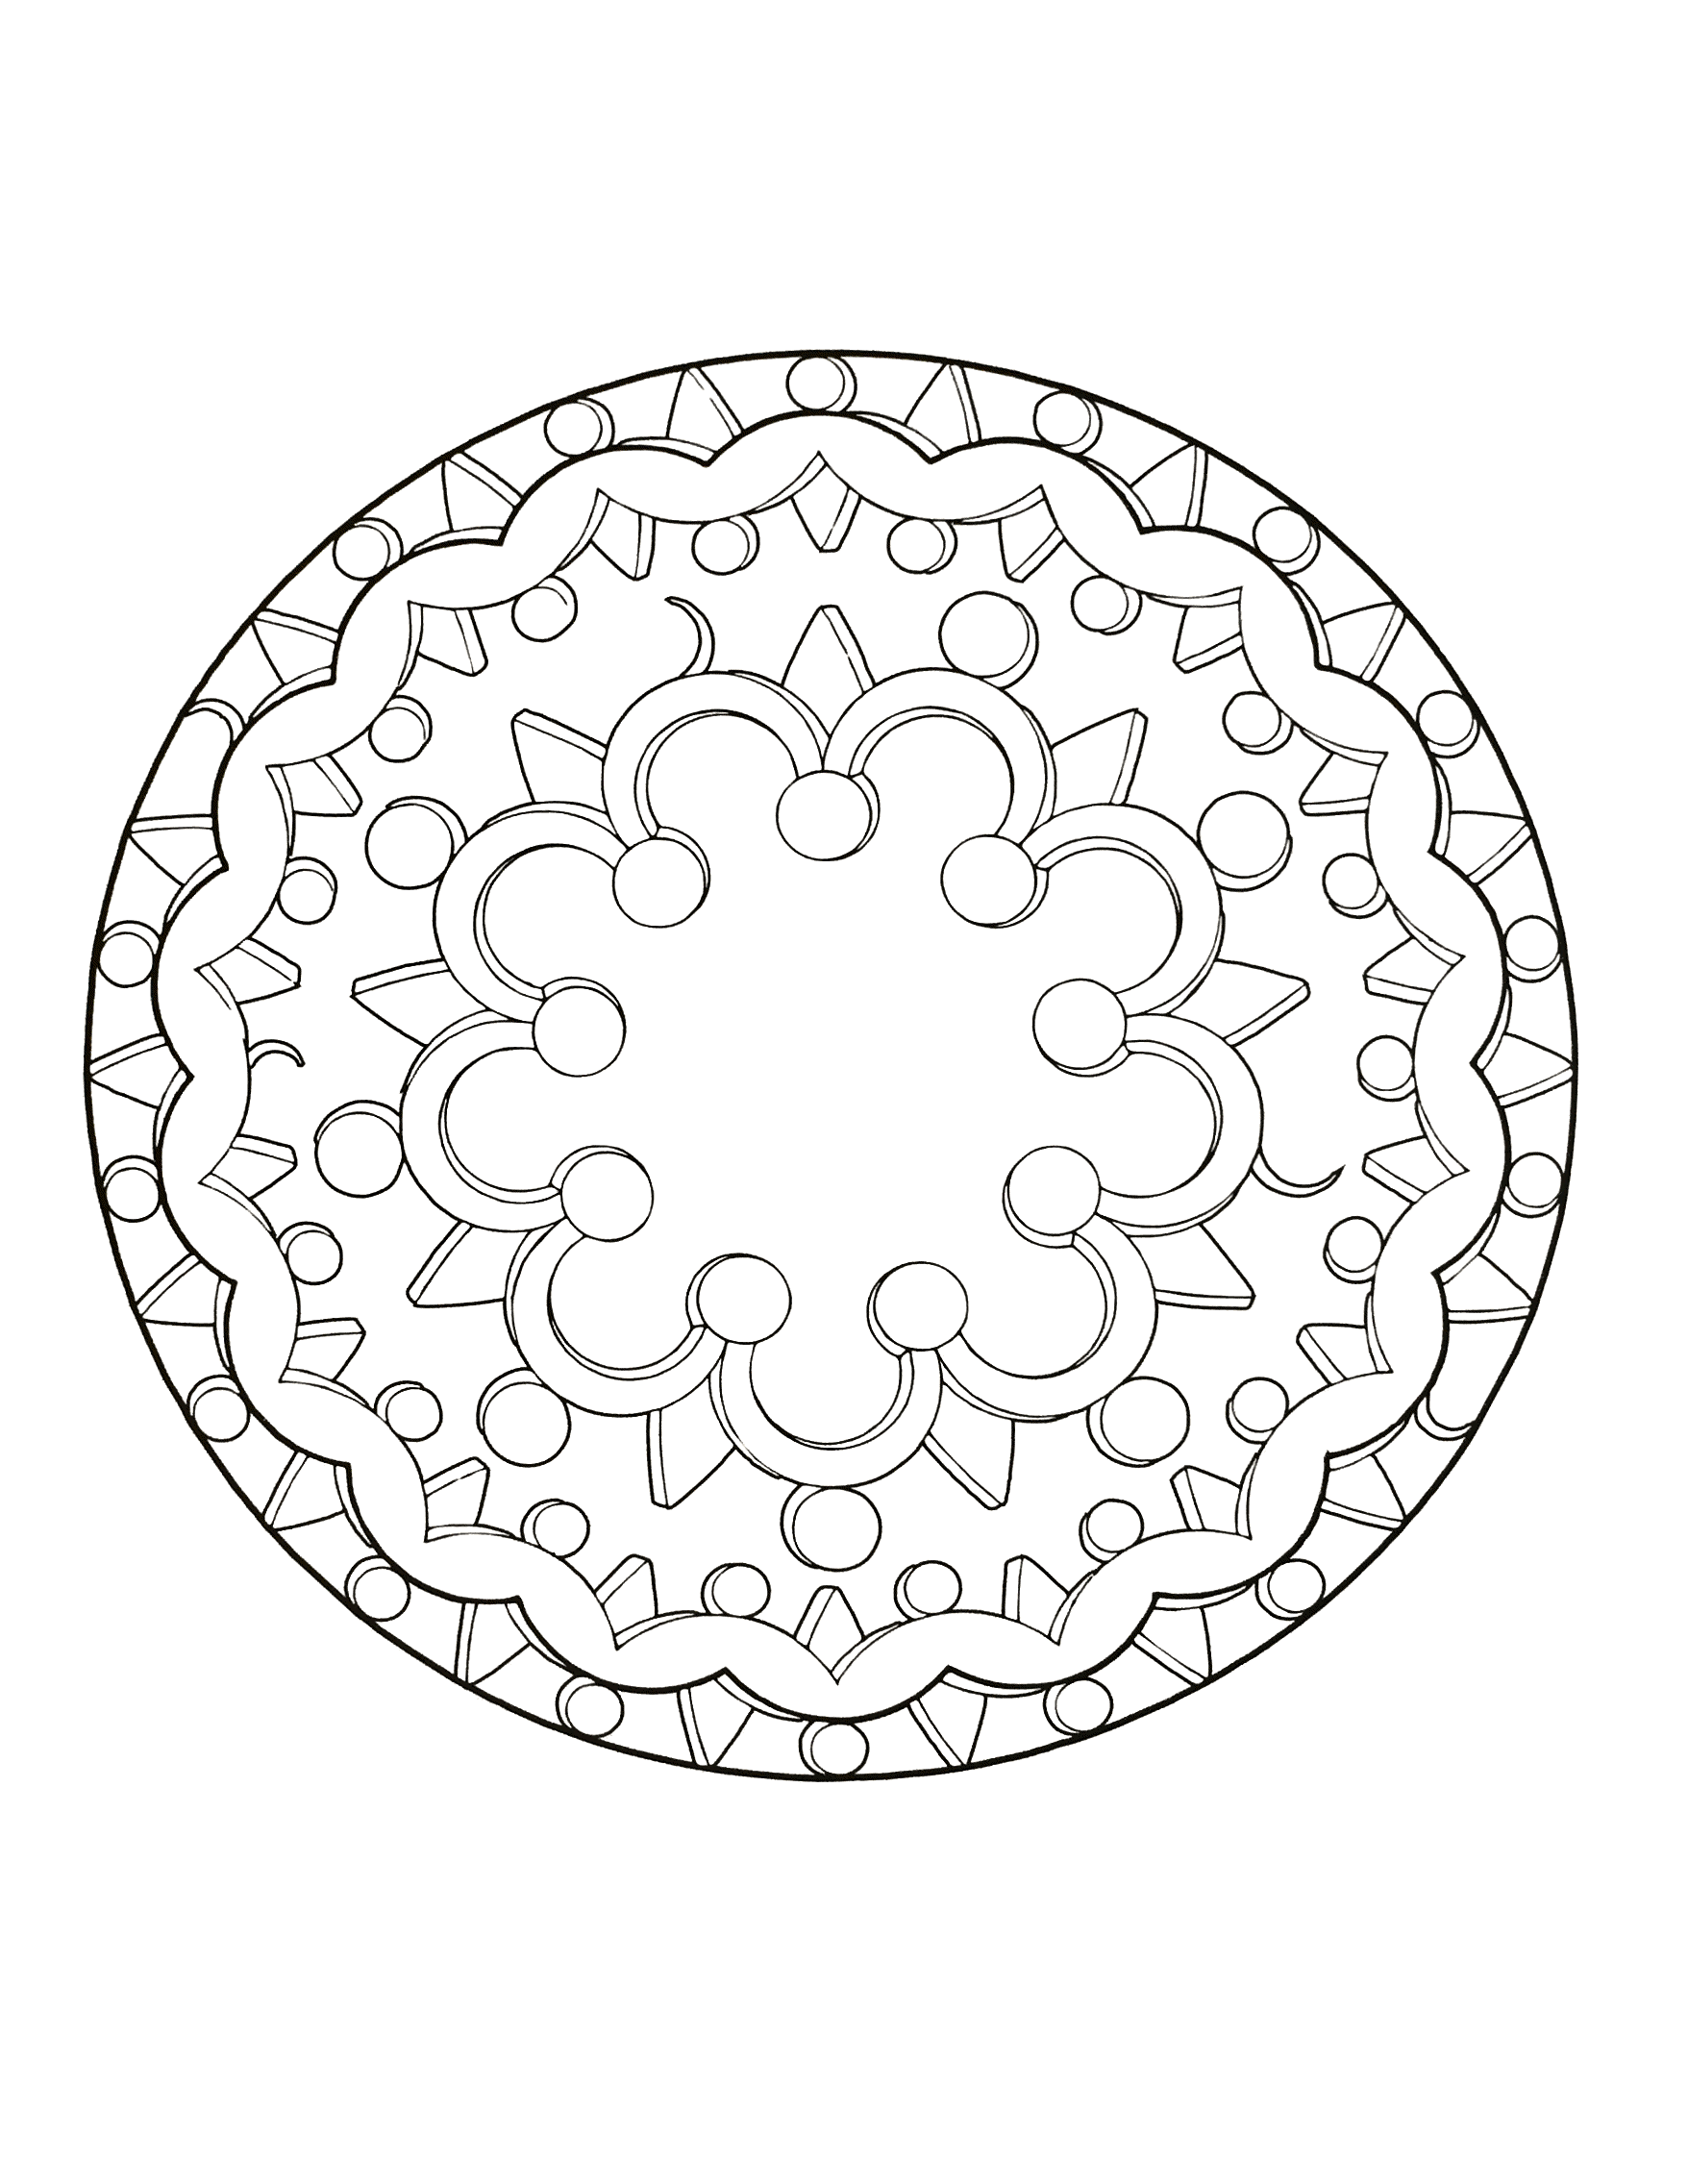 Extraordinaire mandala avec une succession de dessin et de formes géométrique telles que plusieurs cercles et triangles. Facile à colorier.